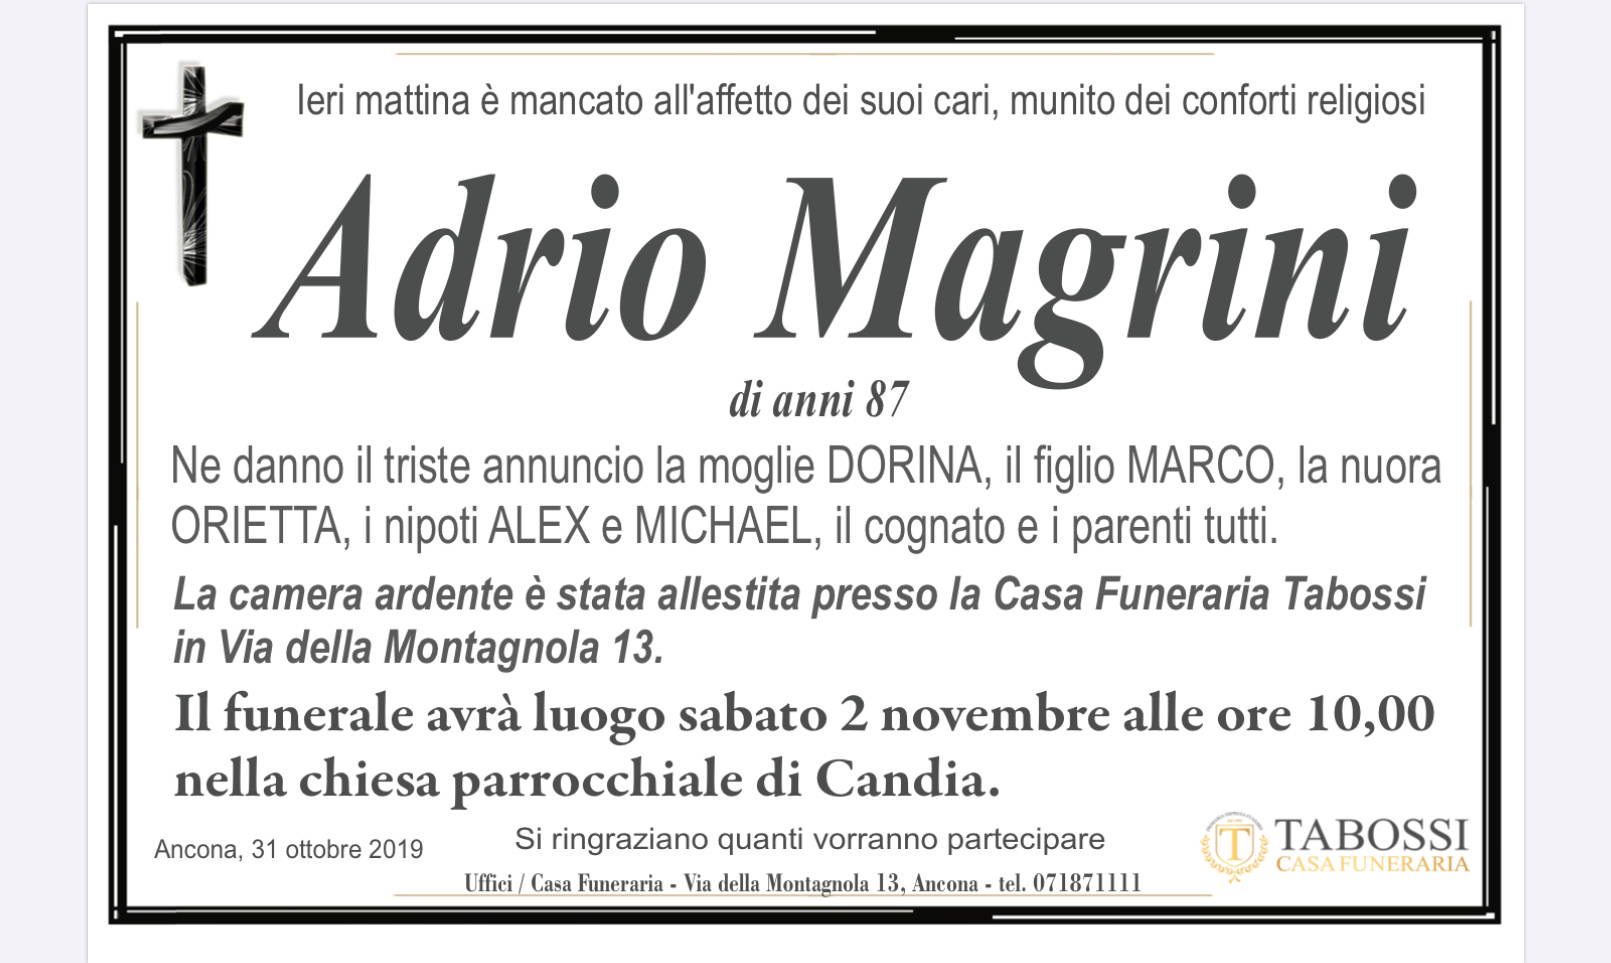 Adrio Magrini